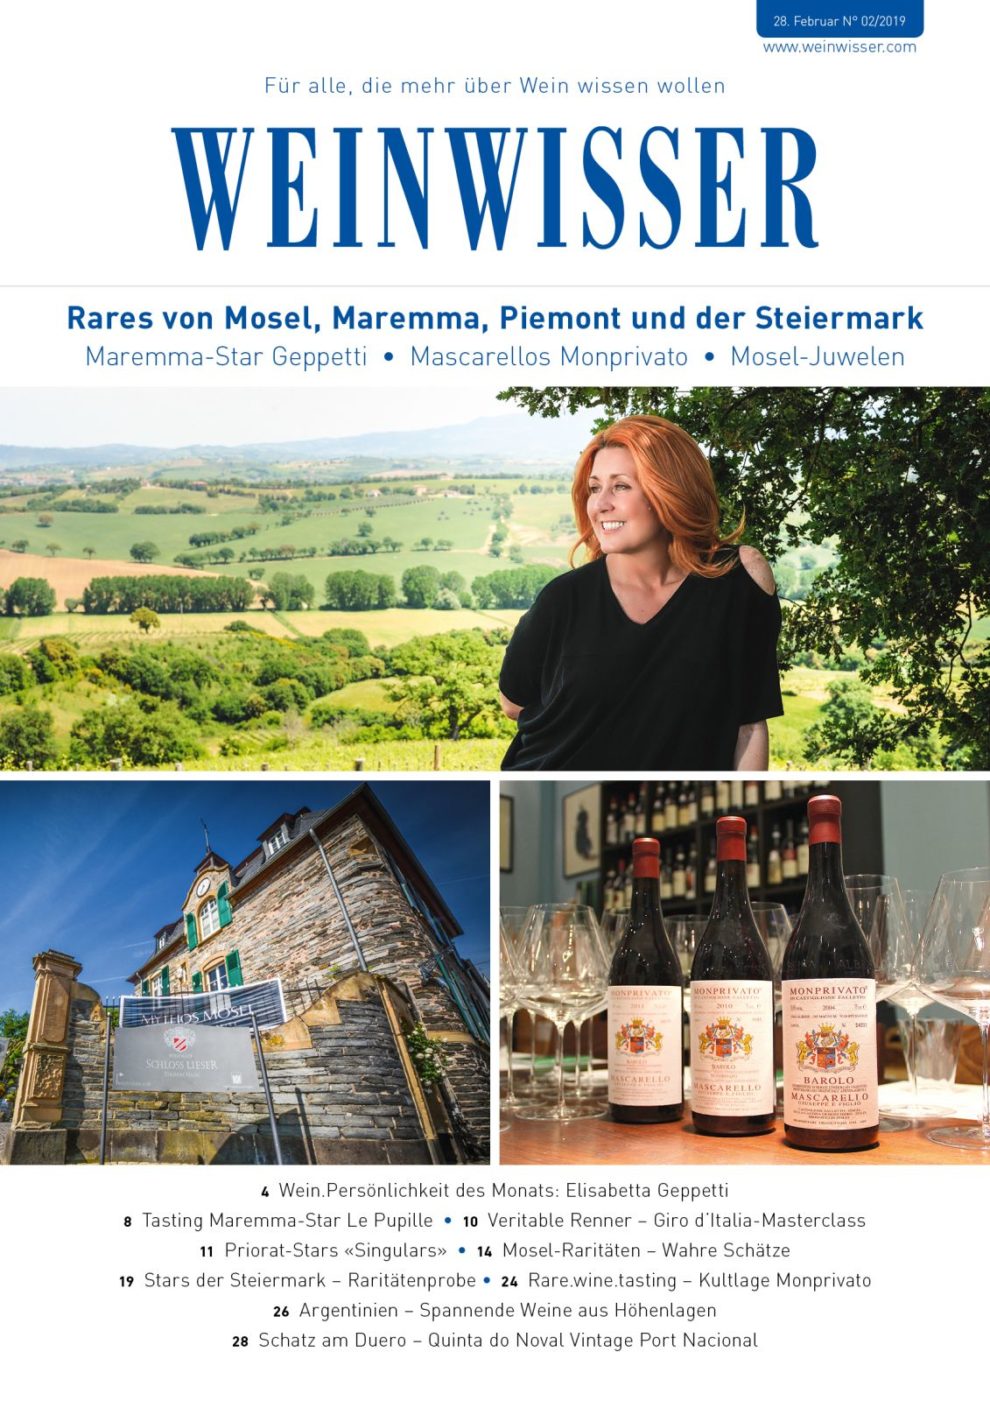 Editorial WEINWISSER-Ausgabe 02/19. Rares von Mosel, Maremma, Piemont und der Steiermark